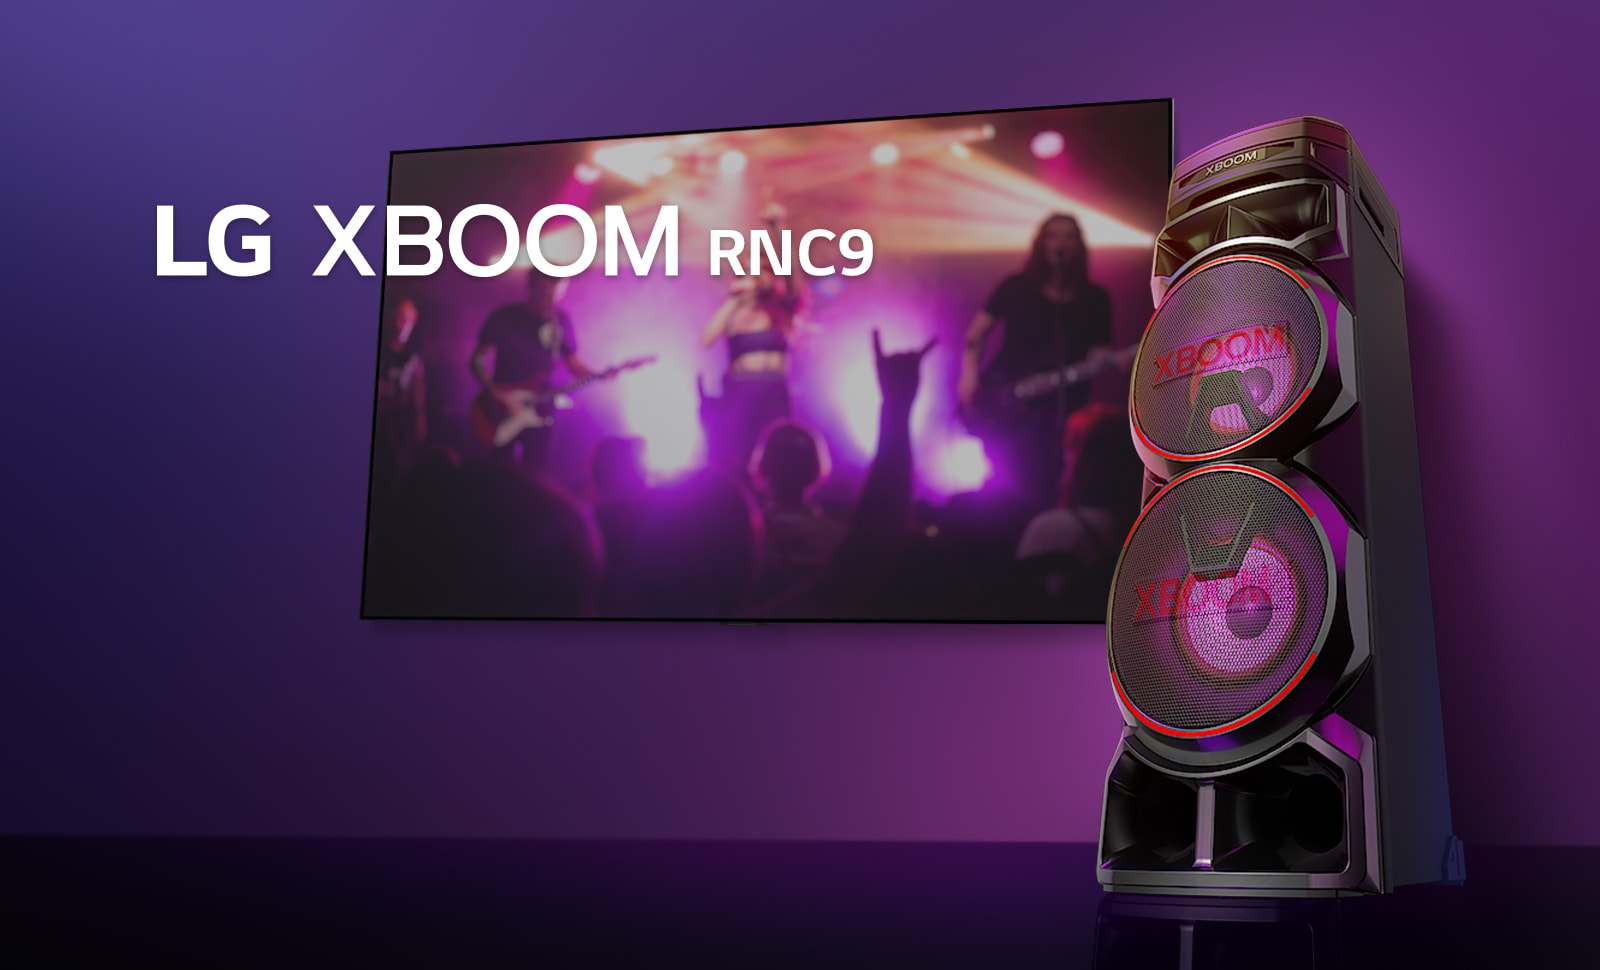 Изглед под нисък ъгъл на дясната страна на LG XBOOM RNC9 на пурпурен фон. Светлината на XBOOM също е пурпурна. И телевизионен екран, на който се показва концертна сцена.